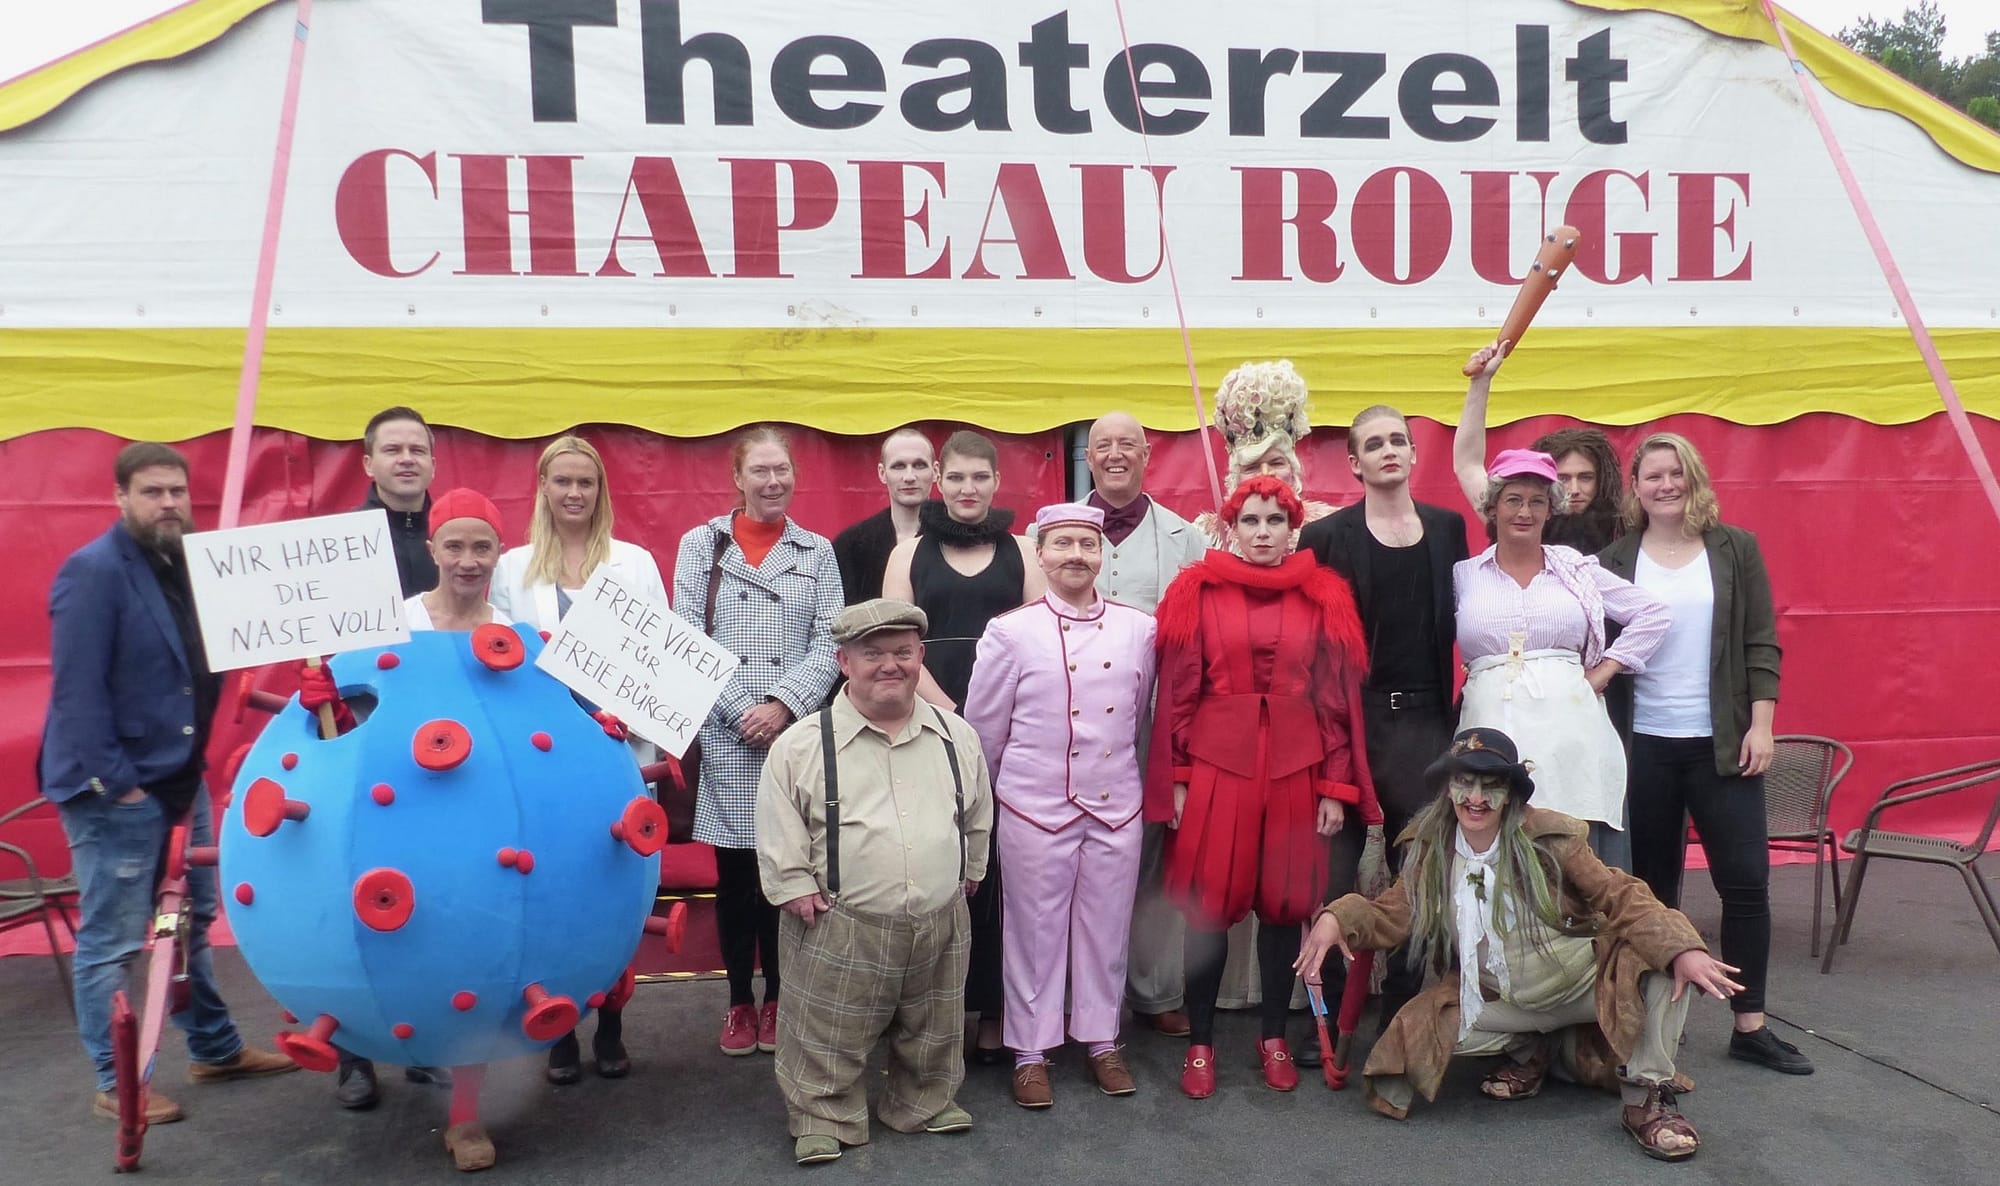 Hamlet, Hammer und viel Grimm im Theaterzelt Chapeau Rouge - Auftakt am 28. Mai mit "Theater, Theater!" 1